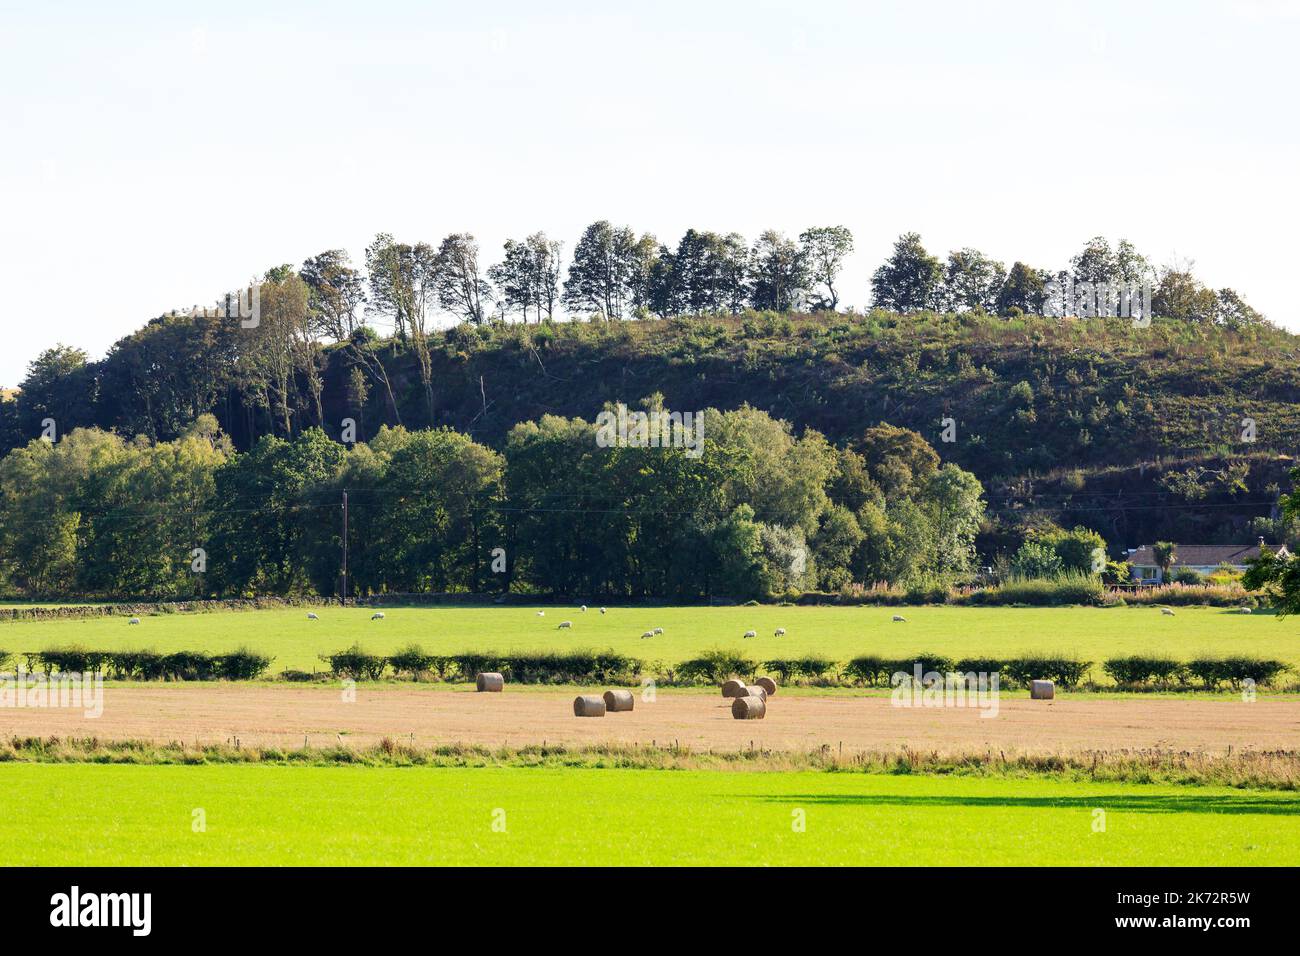 Vue sur les terres agricoles écossaises avec des balles rondes, des moutons et une colline bordée d'arbres Banque D'Images